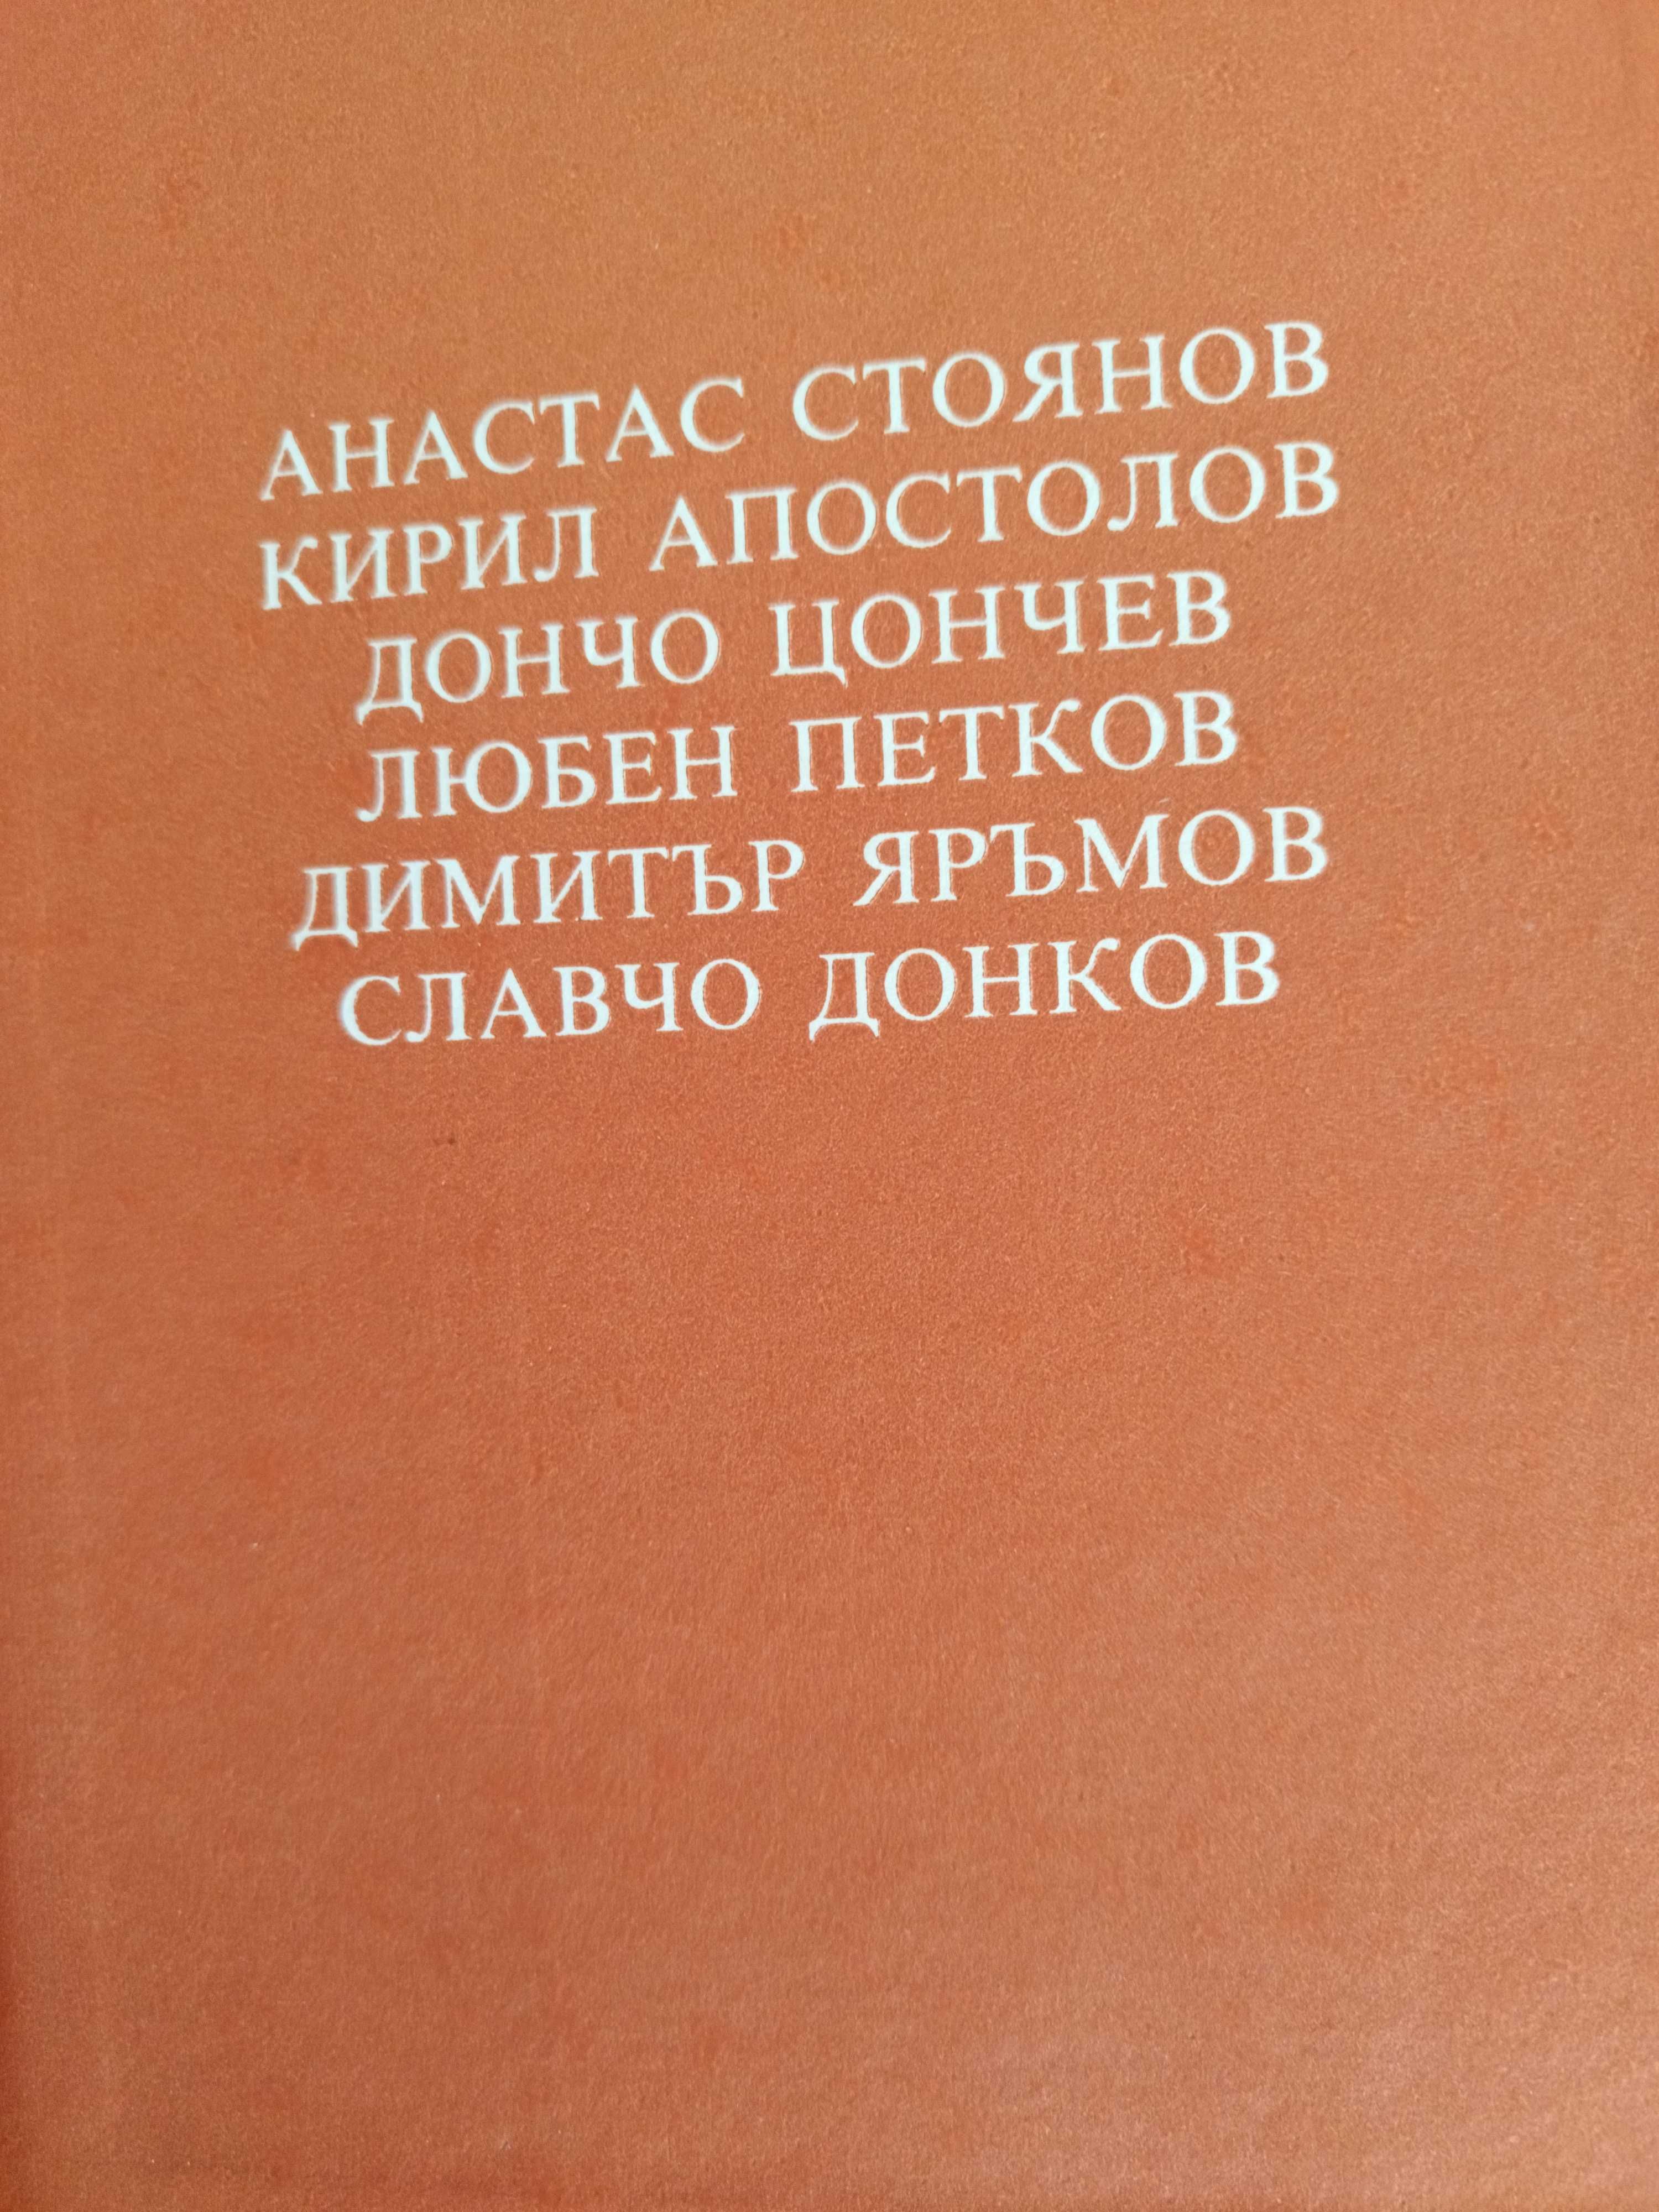 Български разкази за животни, 10 лв.400 стр.